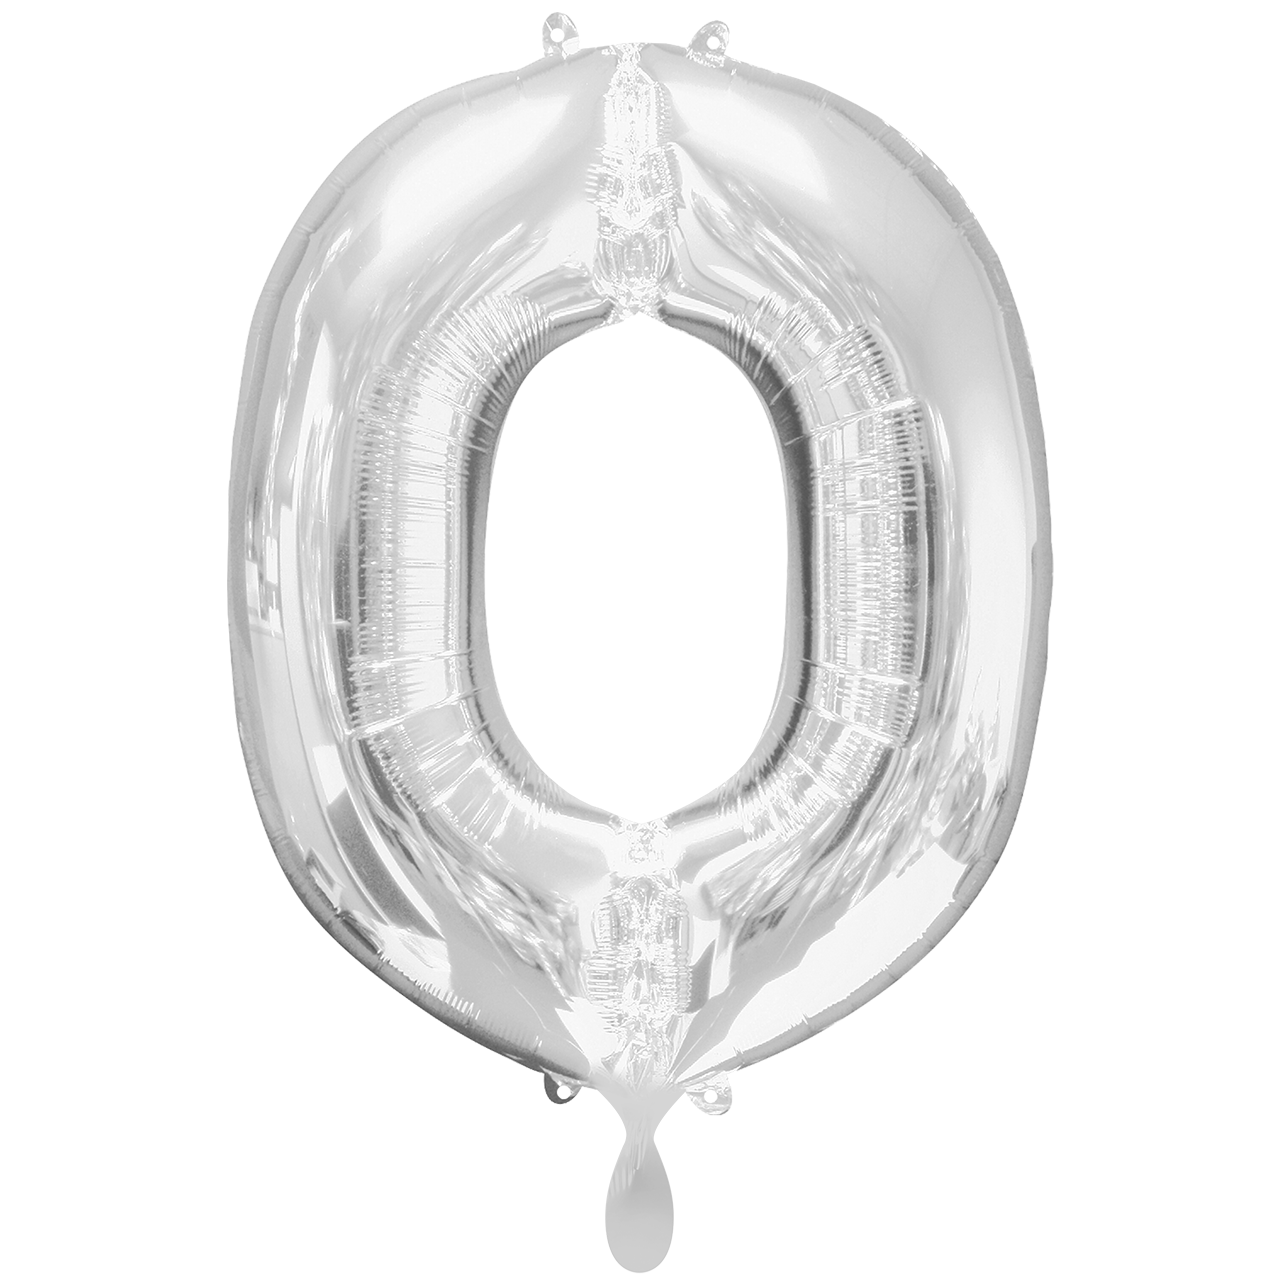 Vorschau: 1 Ballon XXL - Buchstabe O - Silber